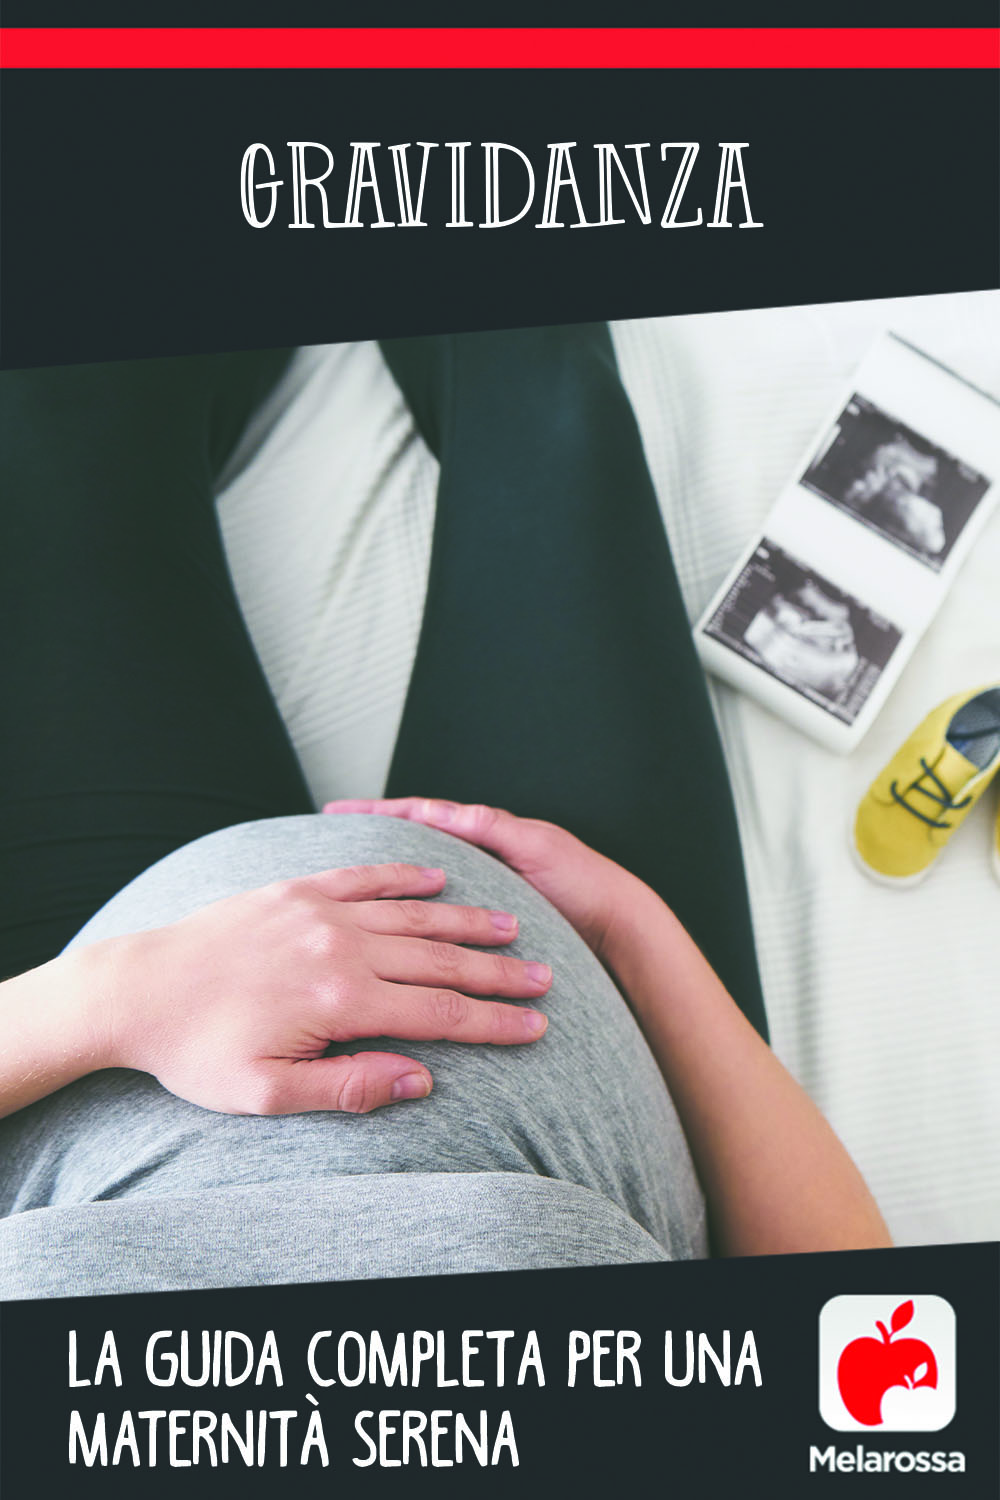 Gravidanza: la guida completa per una maternità serena